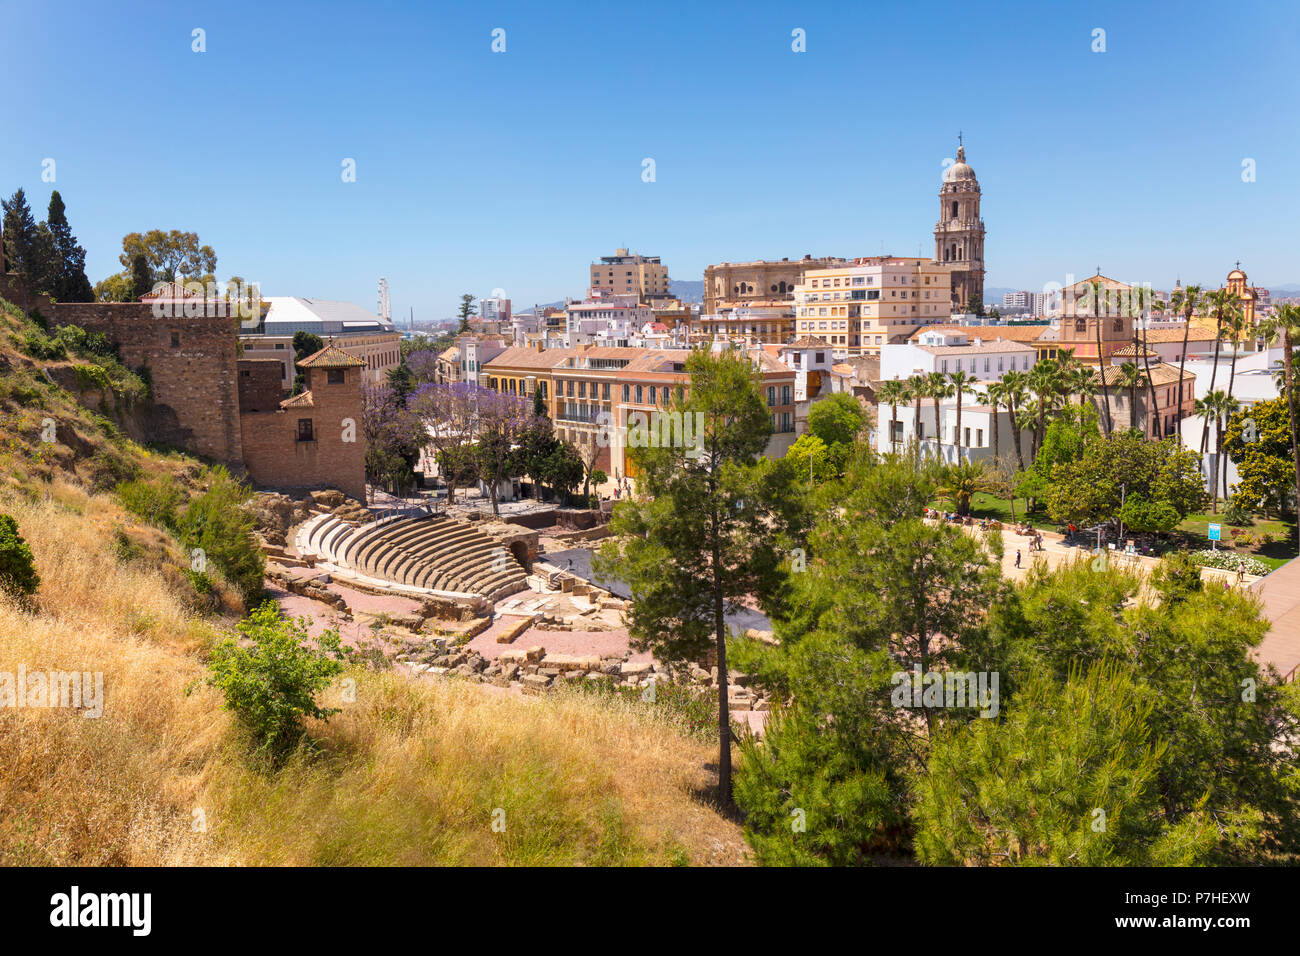 Malaga, Costa del Sol, Provinz Malaga, Andalusien, Südspanien. Blick auf die Stadt, das römische Theater und die Kathedrale. Die Alcazaba können auf der linken Seite gesehen werden. Stockfoto